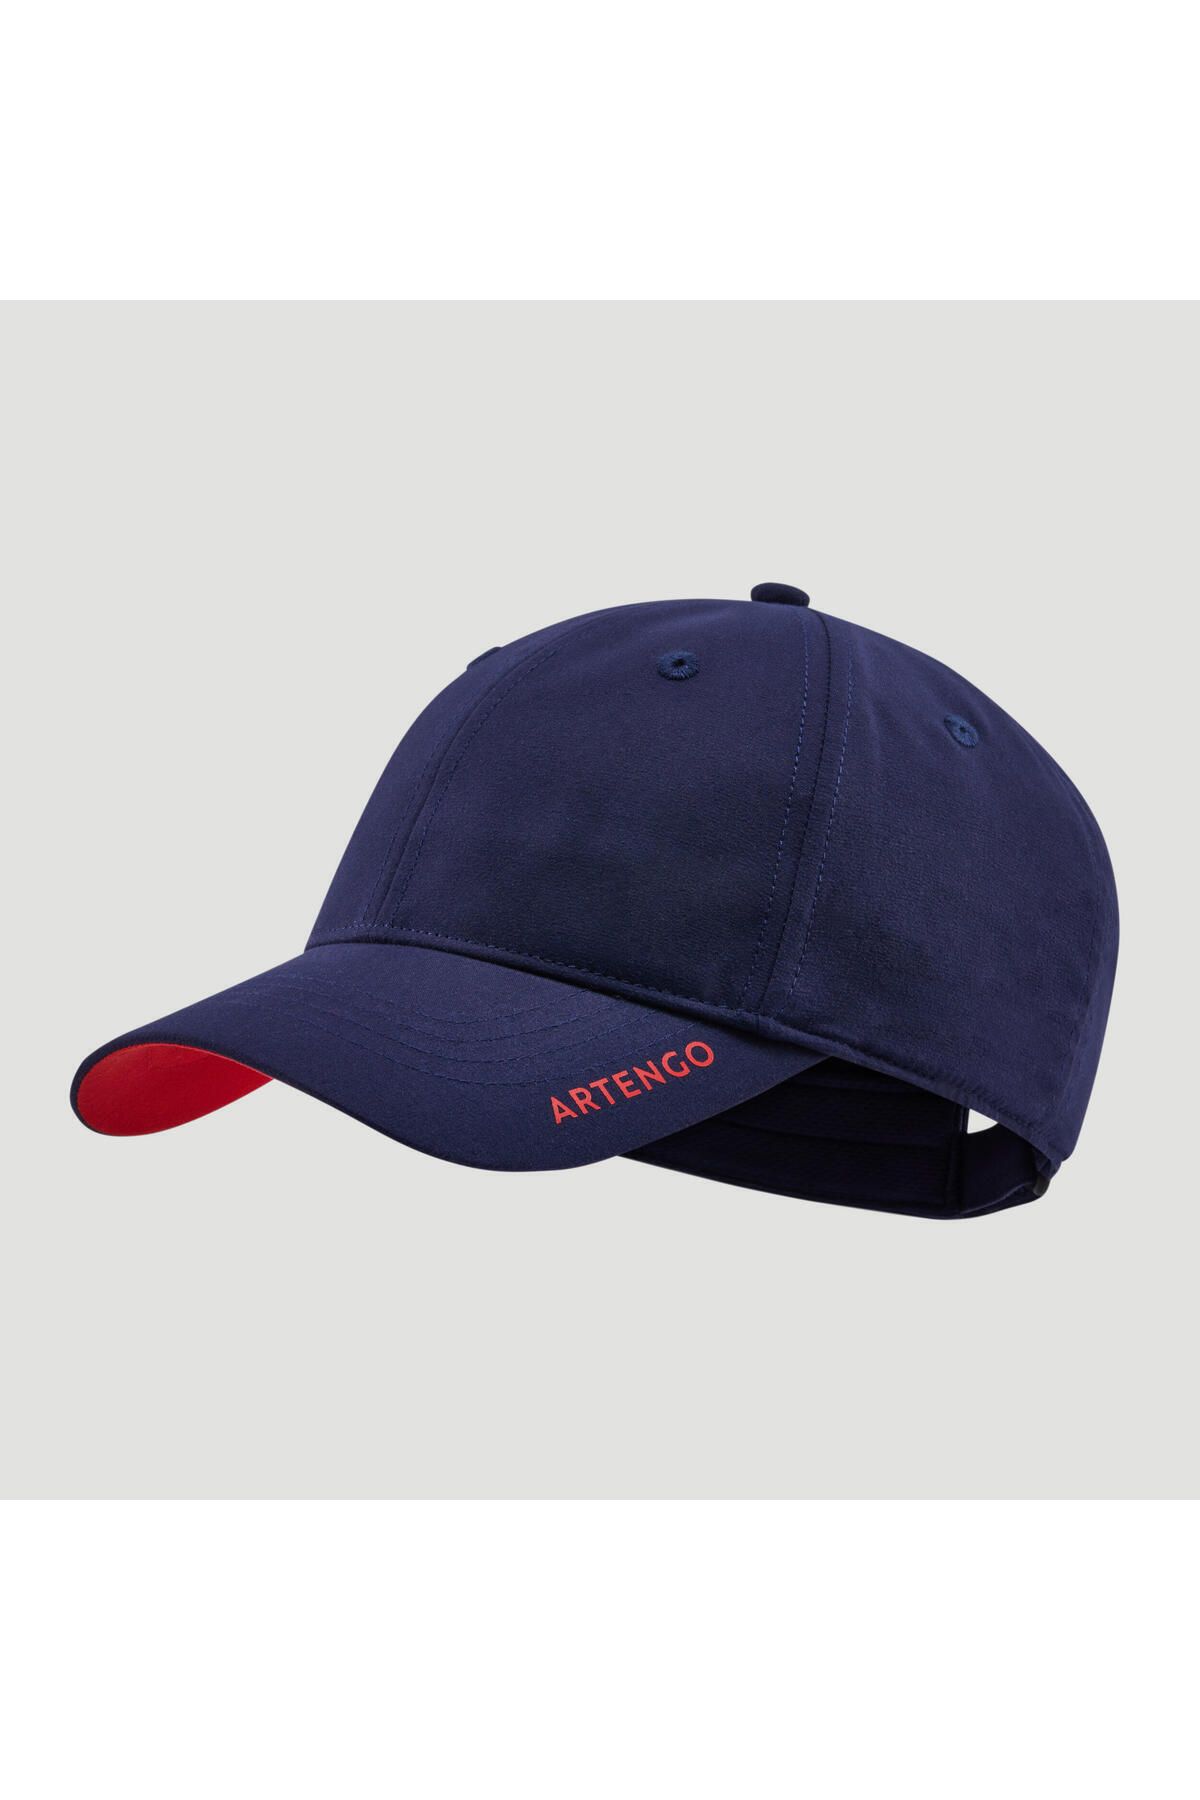 Decathlon Artengo Tenis Şapkası - 58 Cm - Lacivert / Kırmızı - Tc500